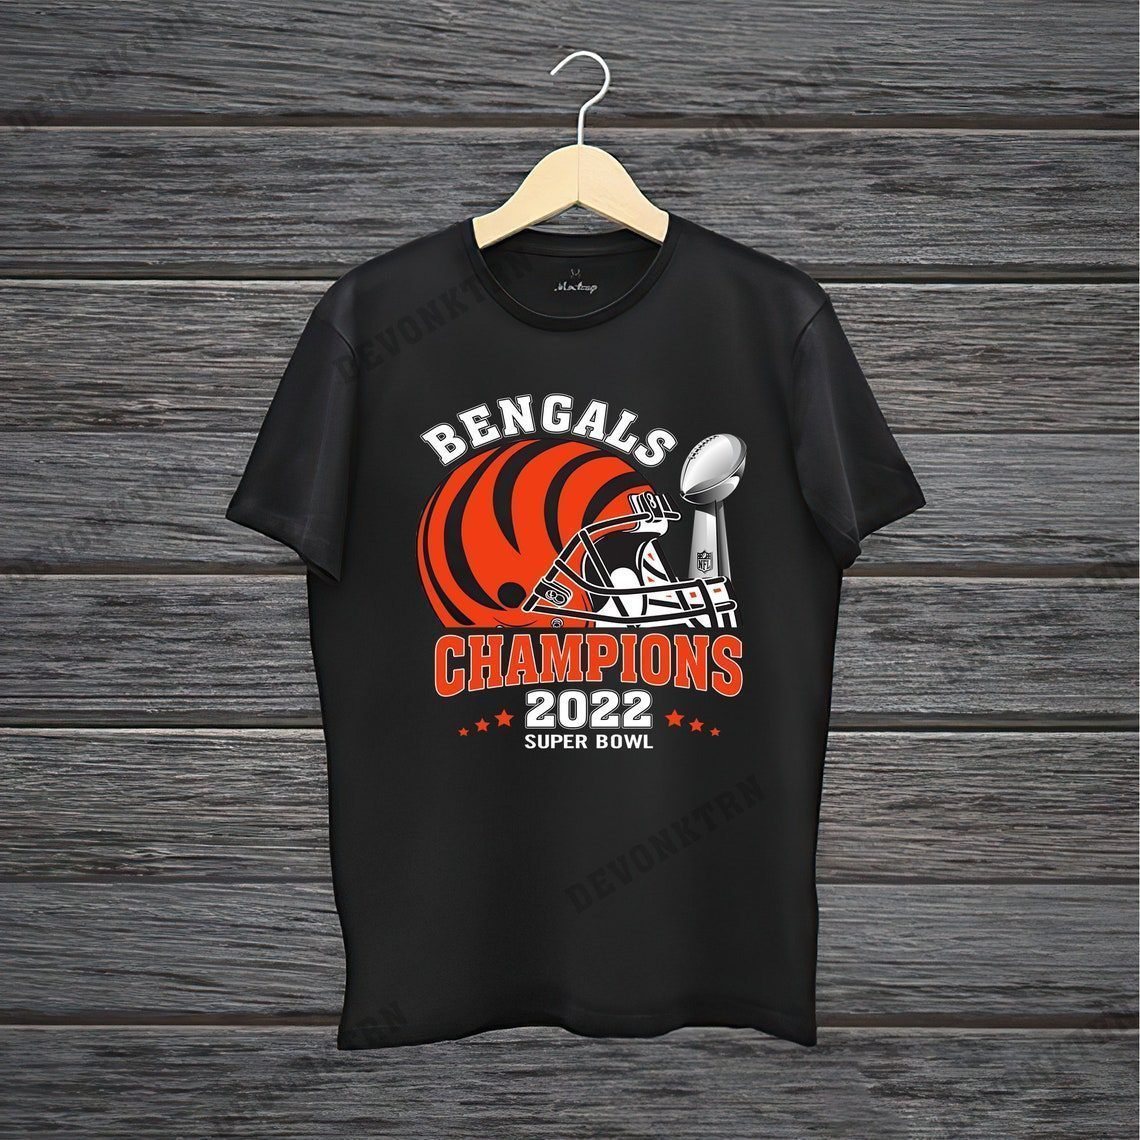 Cincinnati Bengals Super Bowl apparel